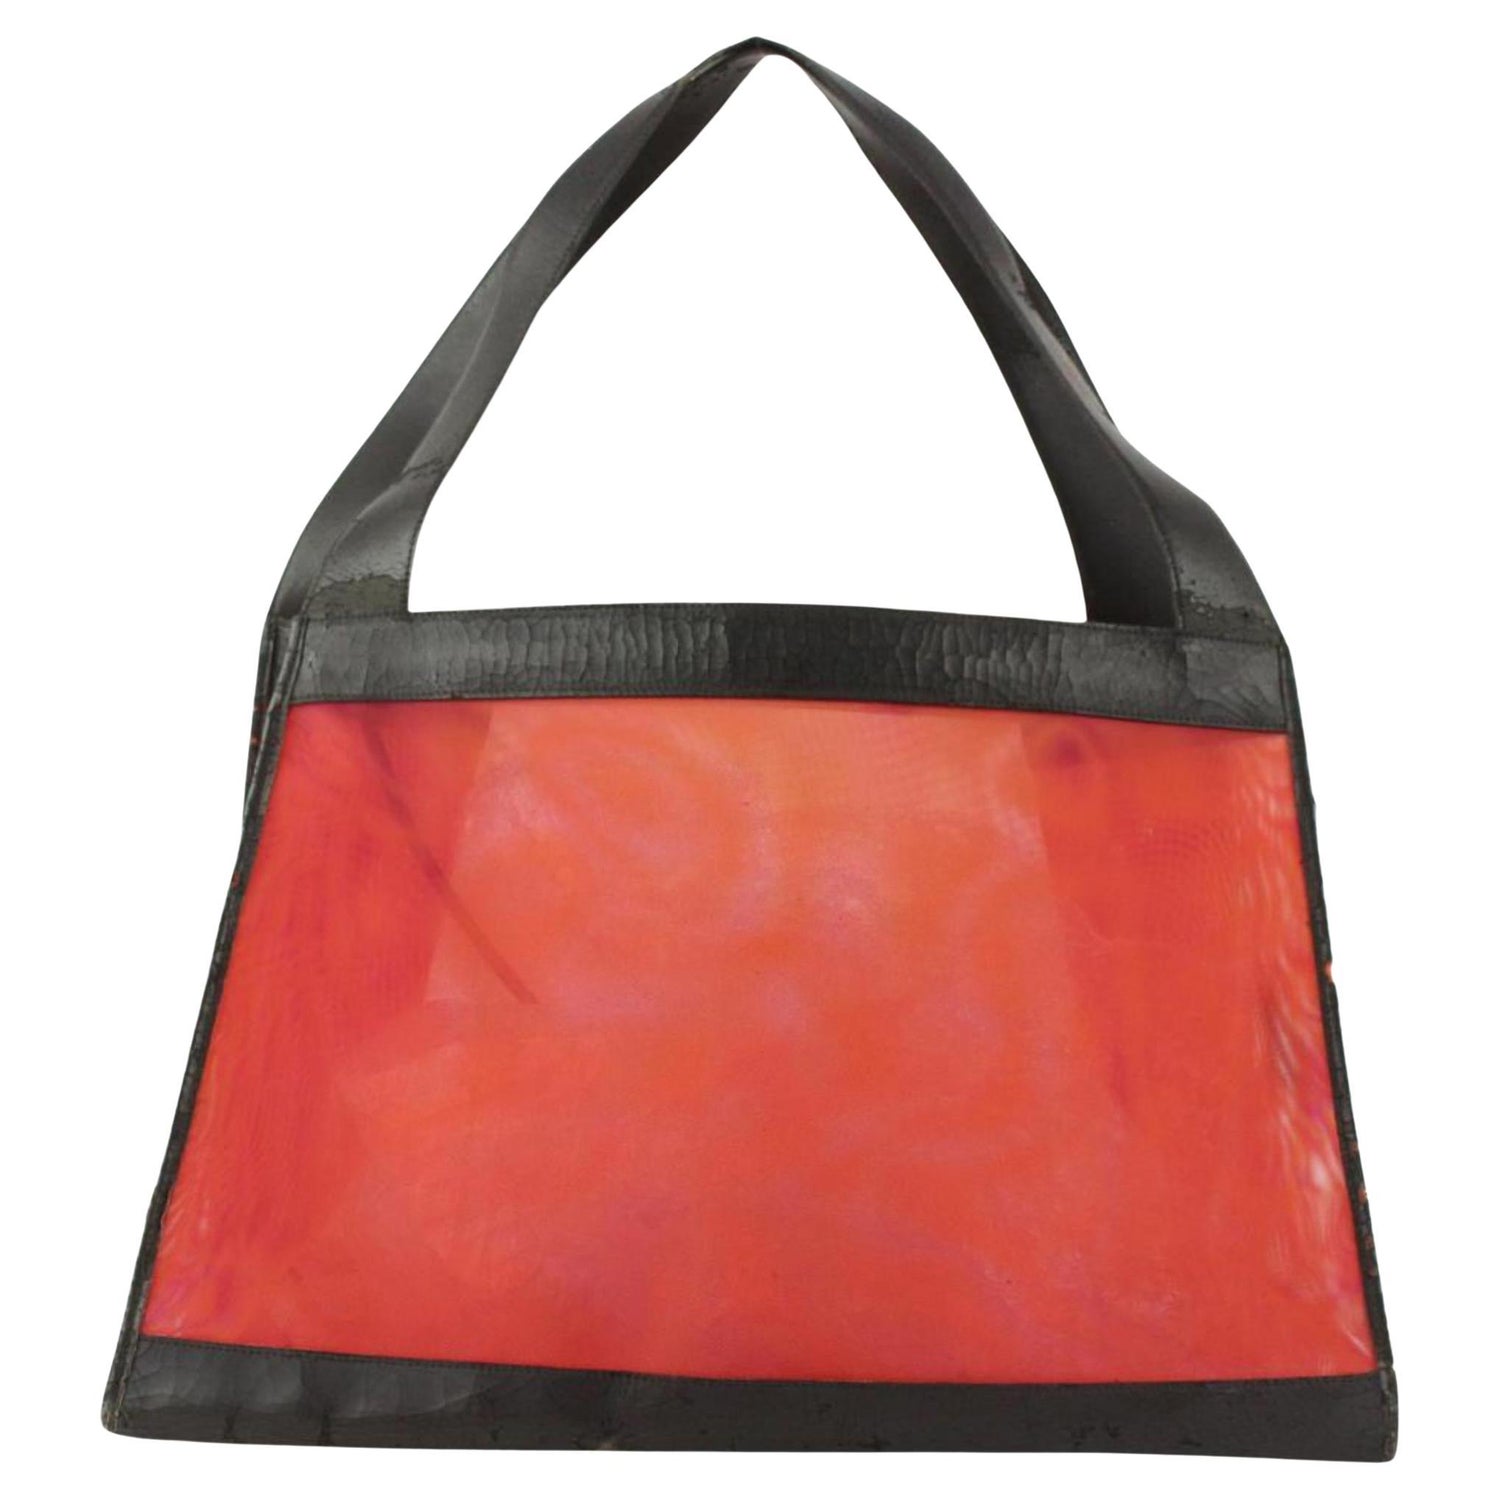 Chanel Mesh Tote - 10 For Sale on 1stDibs | chanel mesh bag, chanel net bag,  mesh tote bag